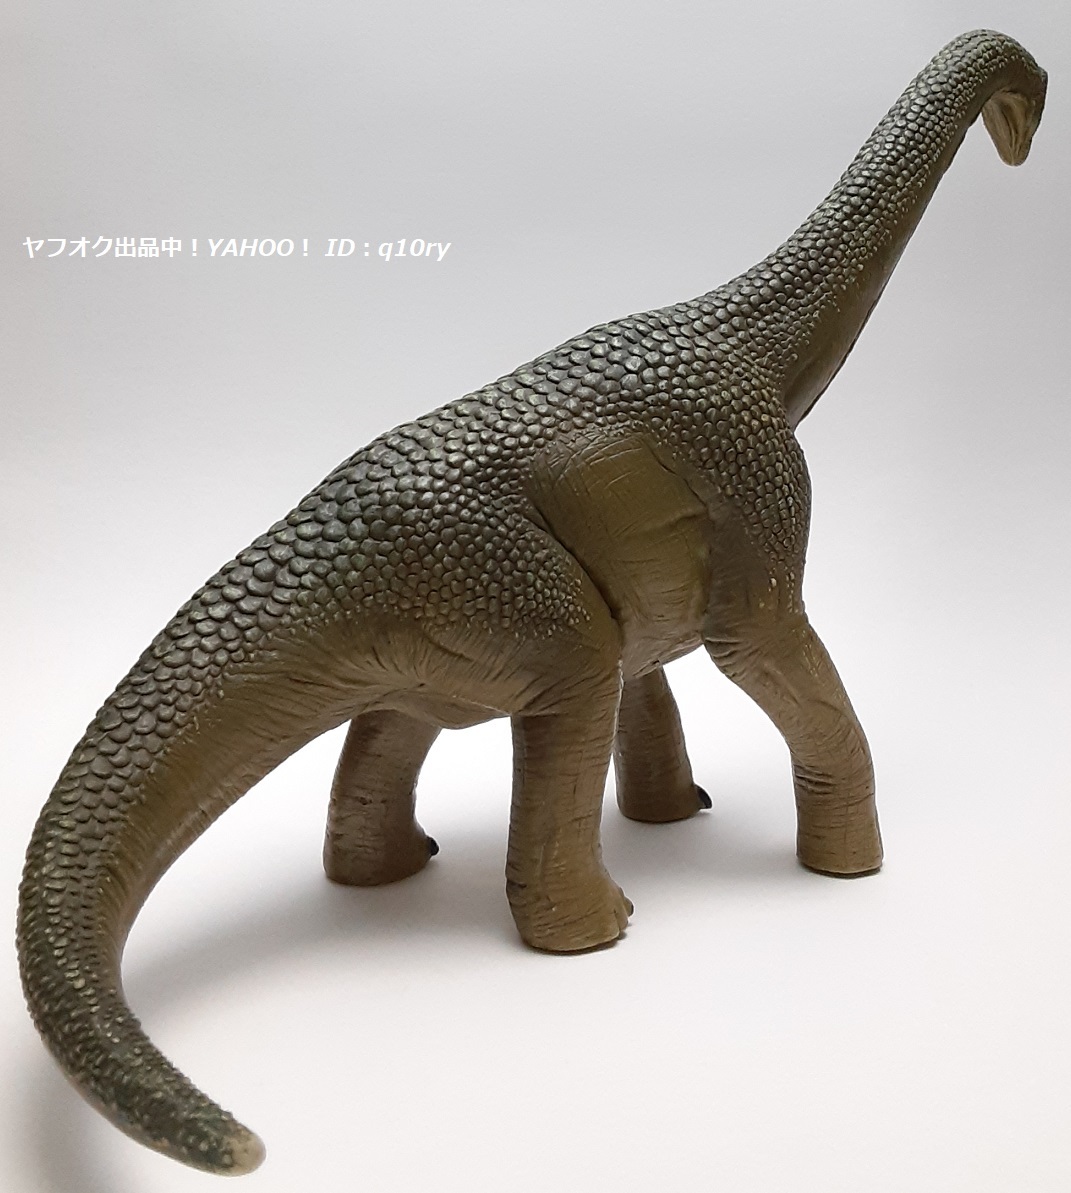 ブラキオサウルス/シュライヒ フィギュア【Schleich】恐竜の画像6